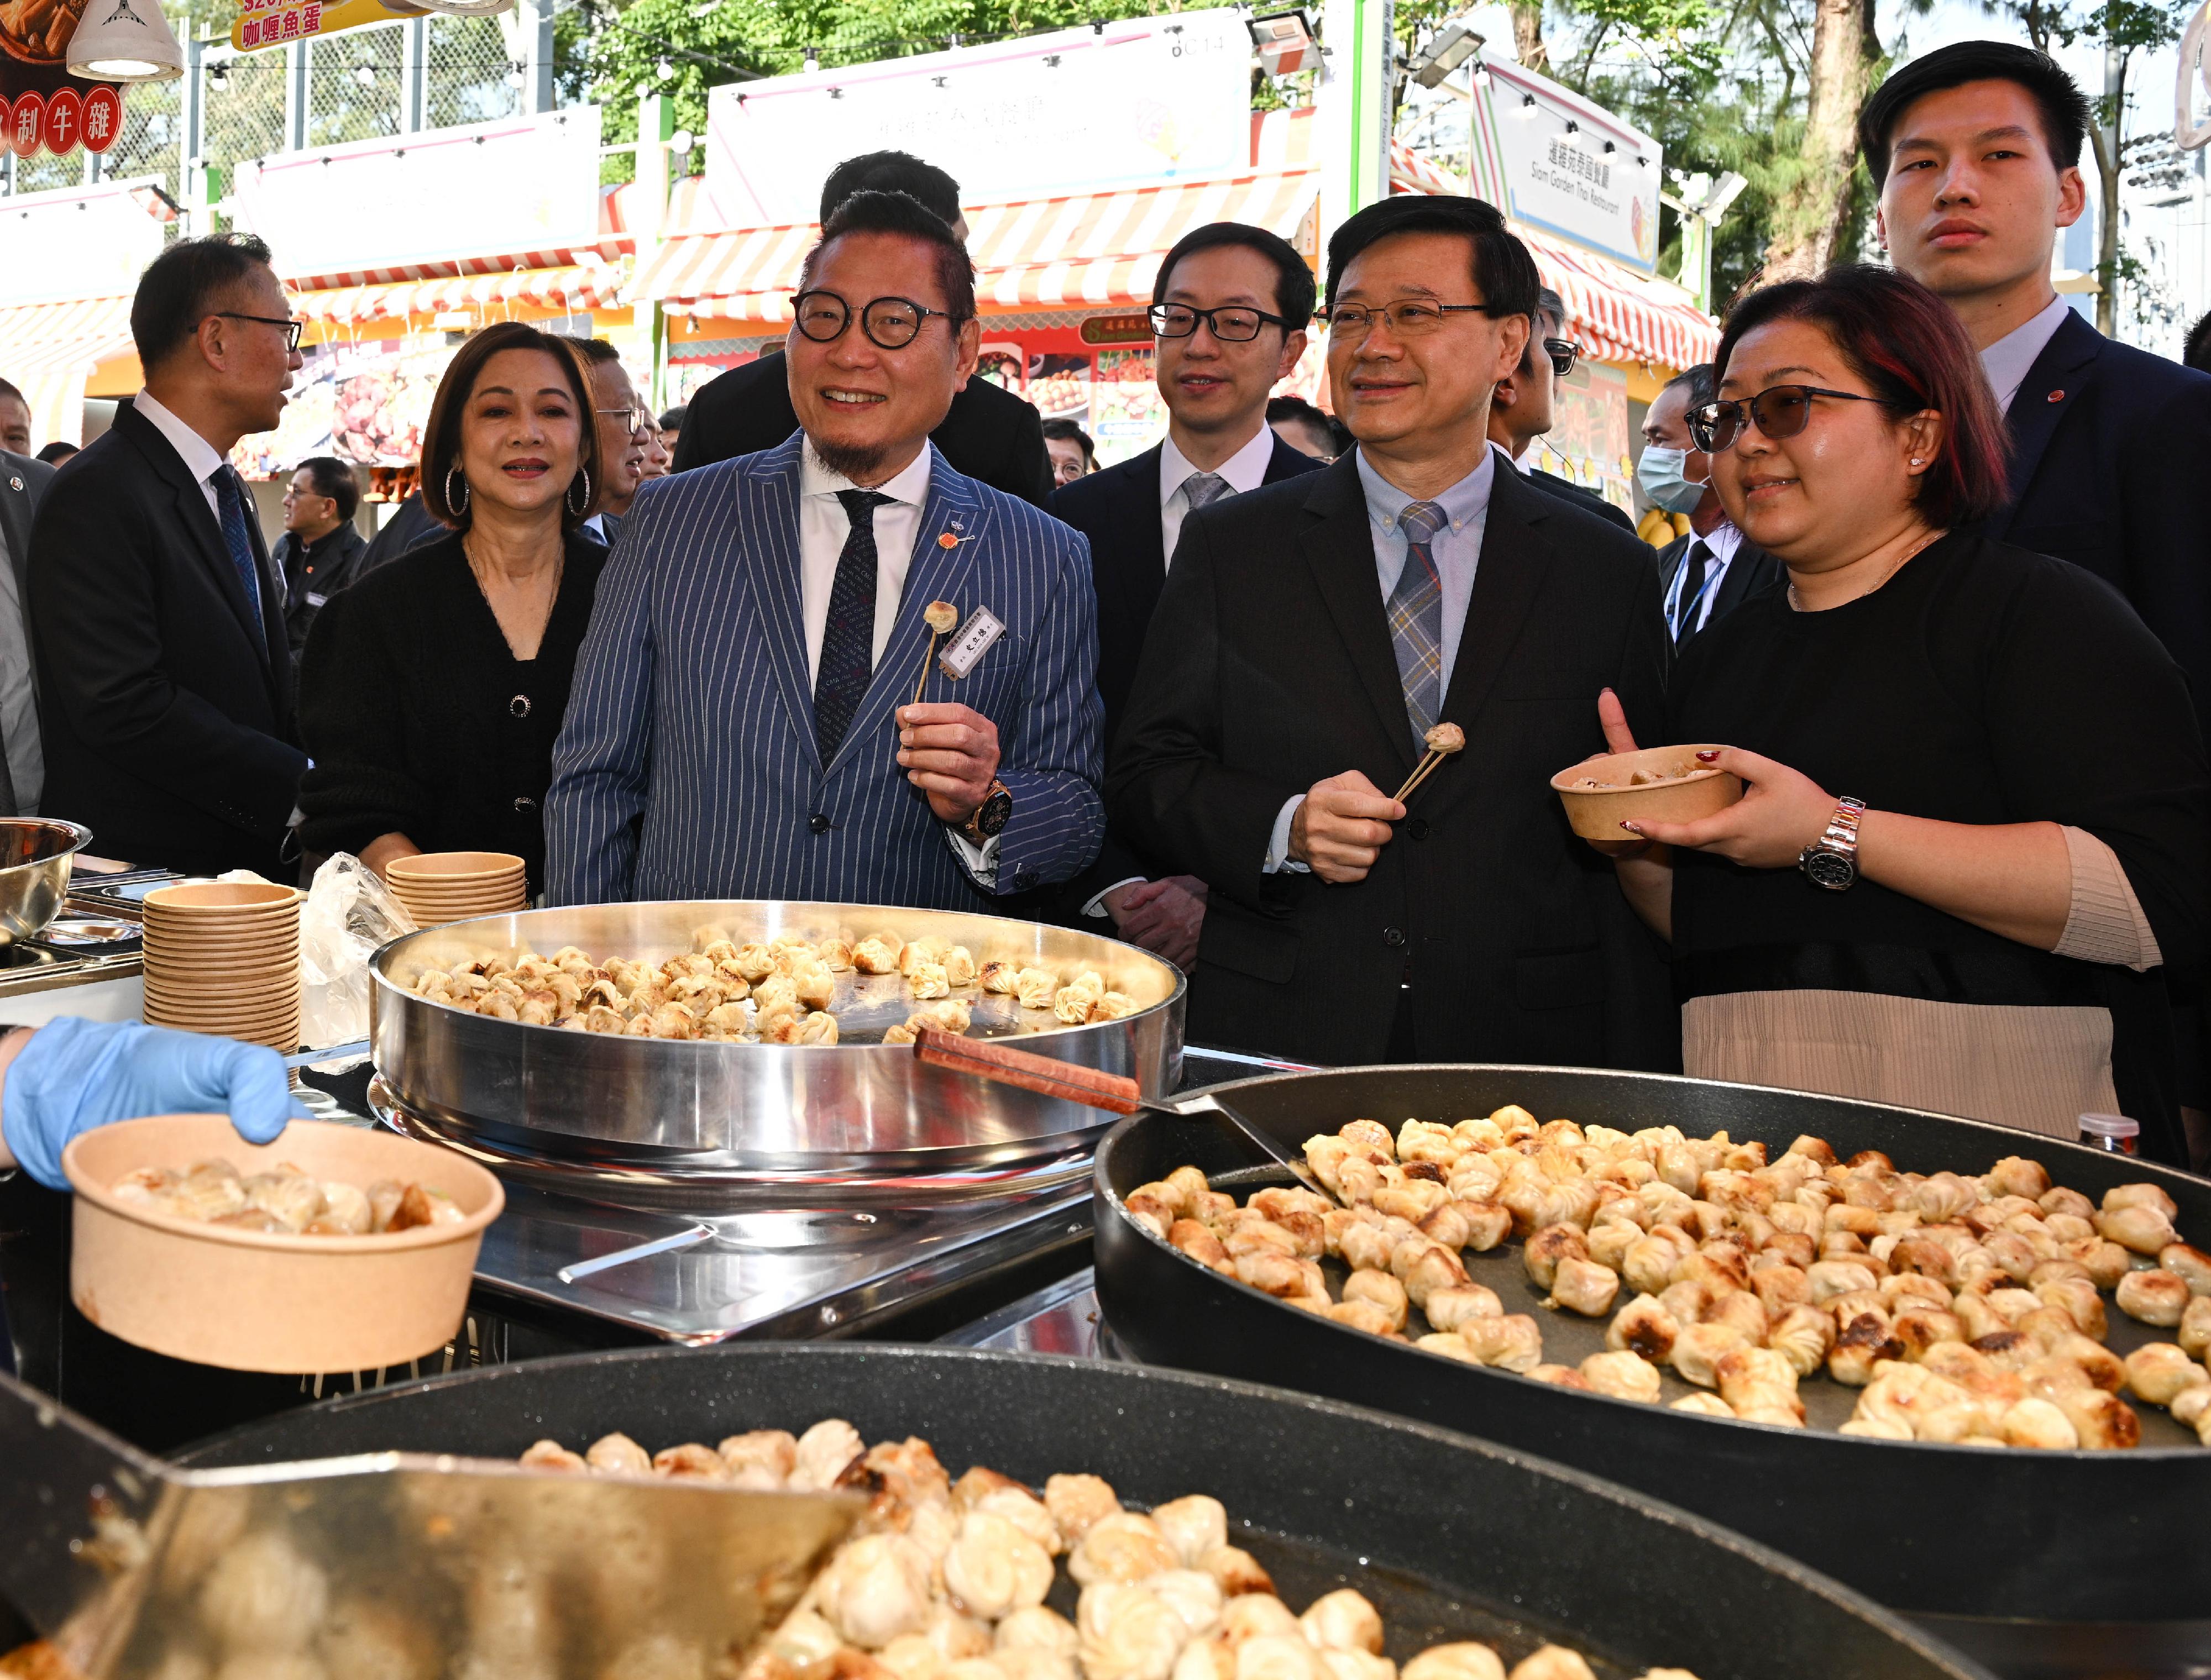 行政长官李家超今早（十二月十六日）出席第57届工展会开幕典礼。图示李家超（右三）在场内品尝小食。